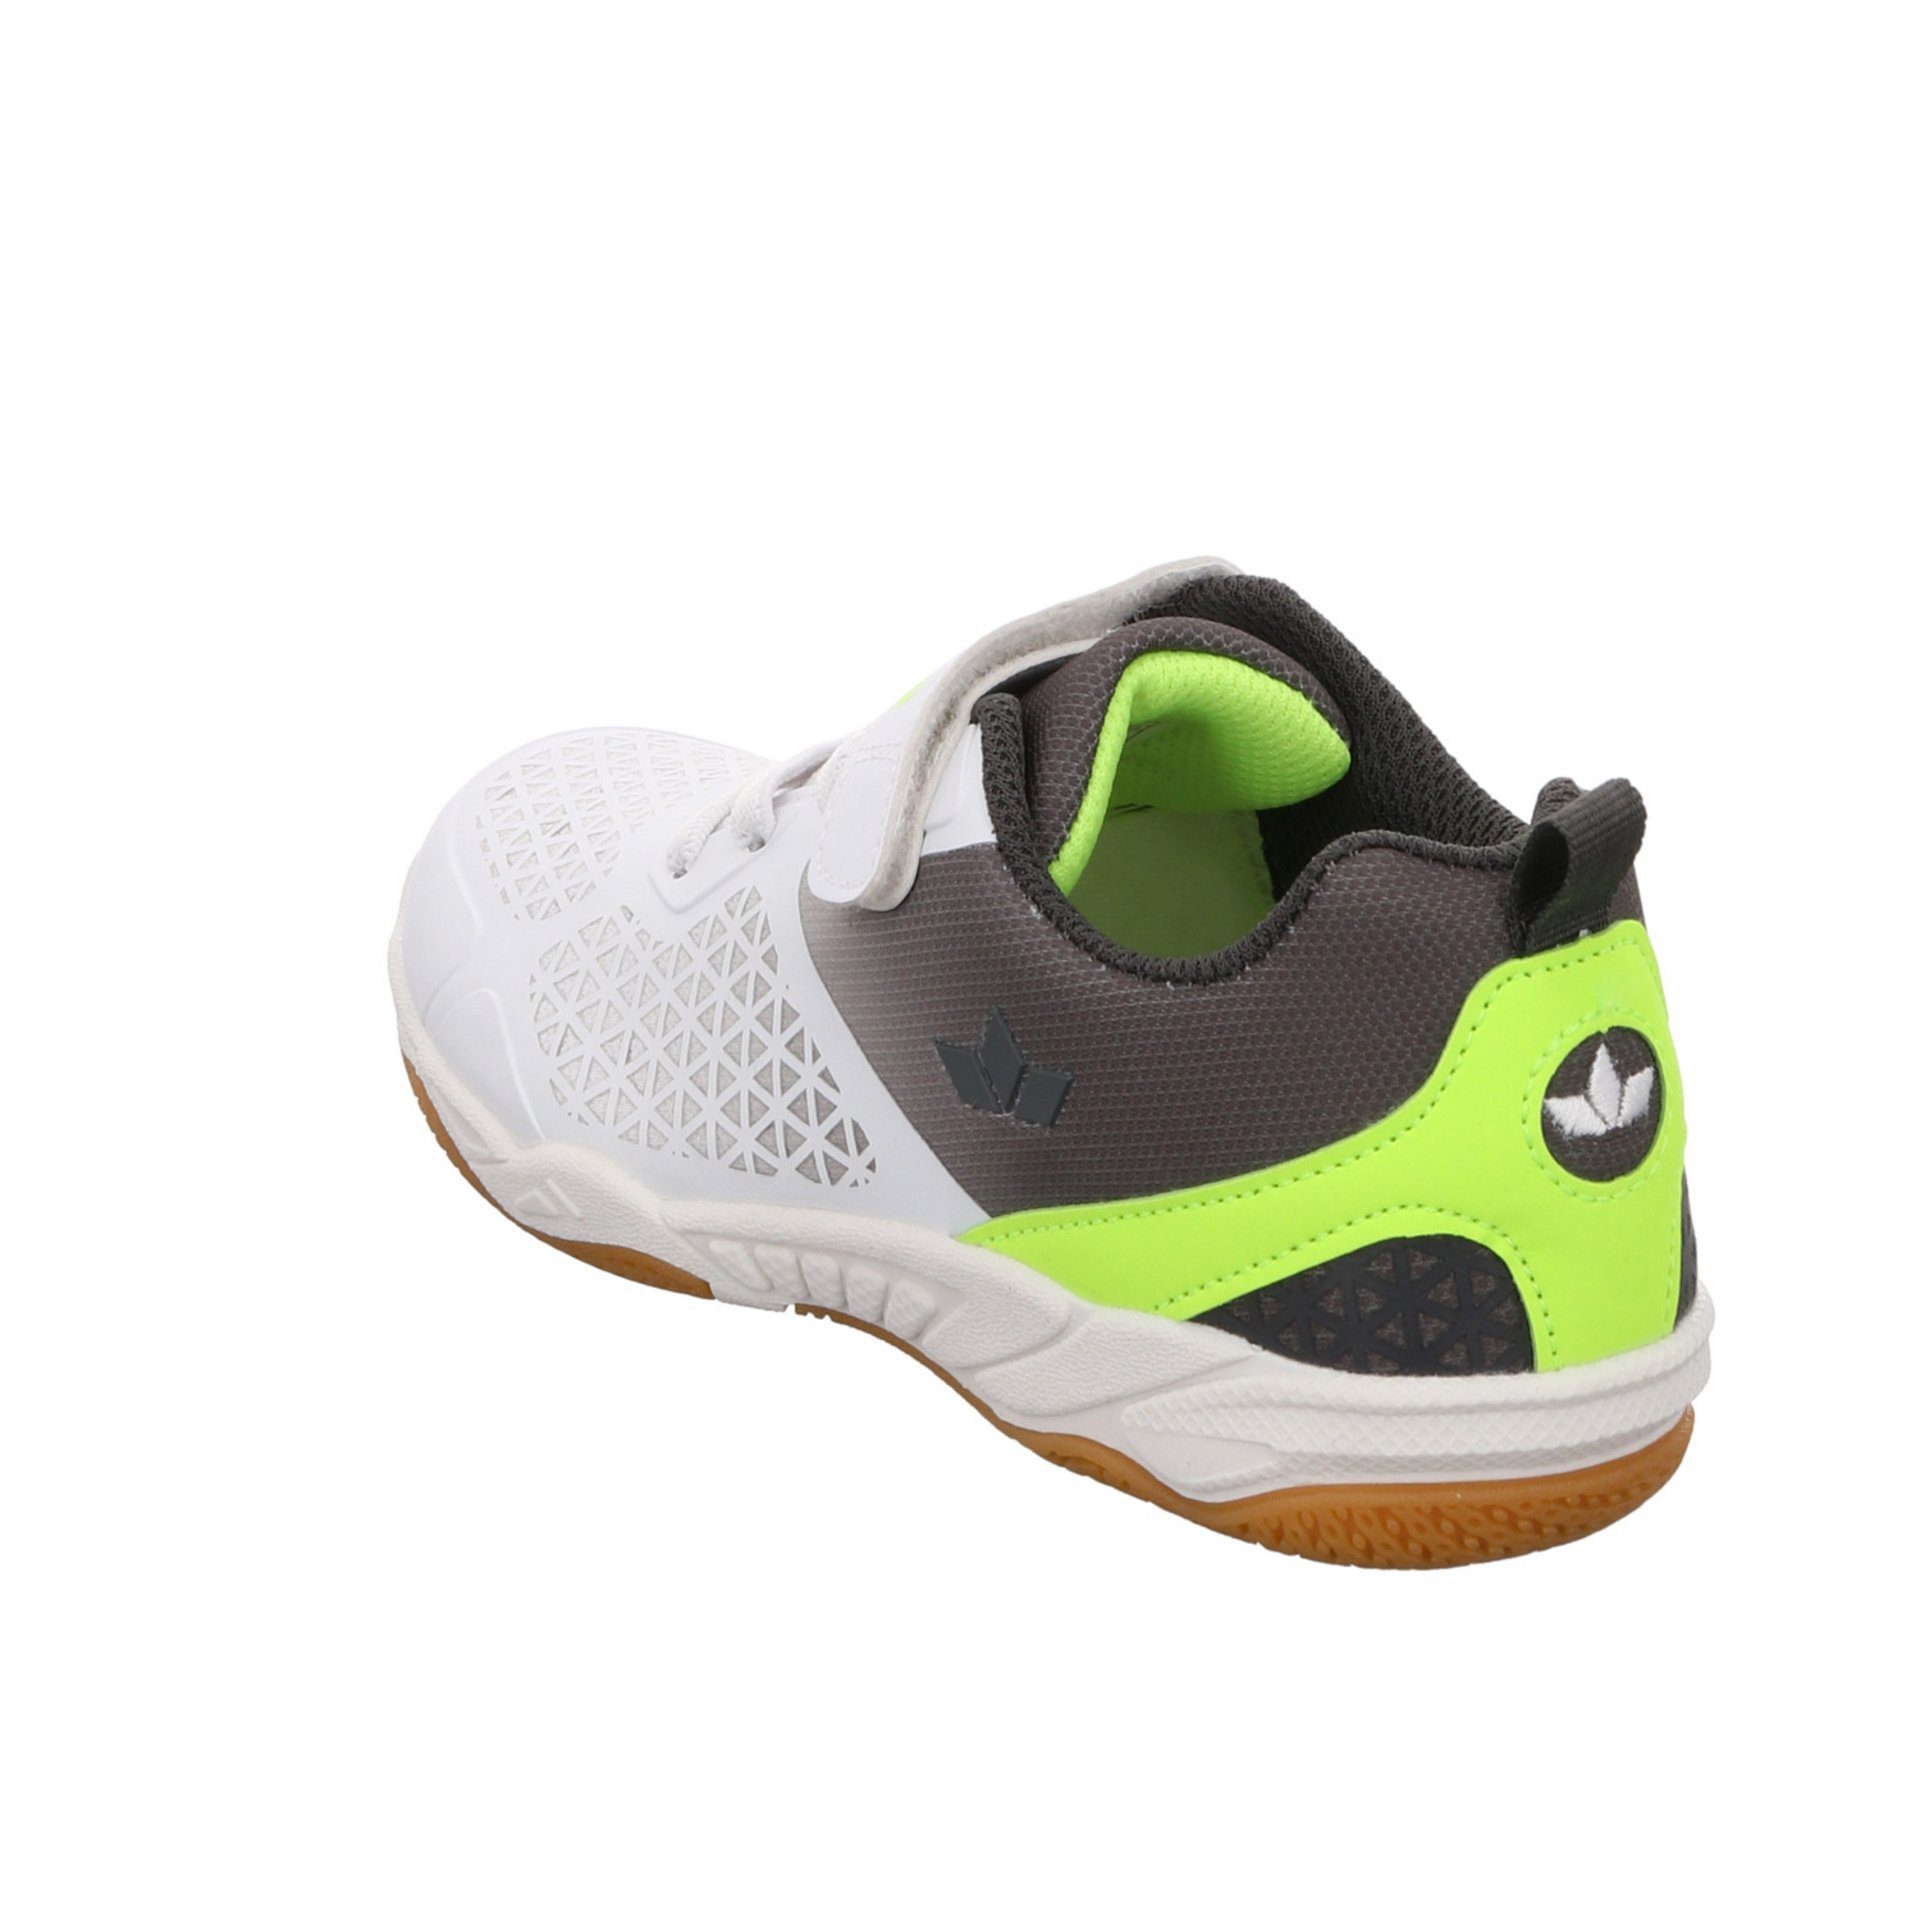 Lico Kit VS weiss/grau/lemon Synthetikkombination Sneaker Synthetikkombination Sneaker gemustert